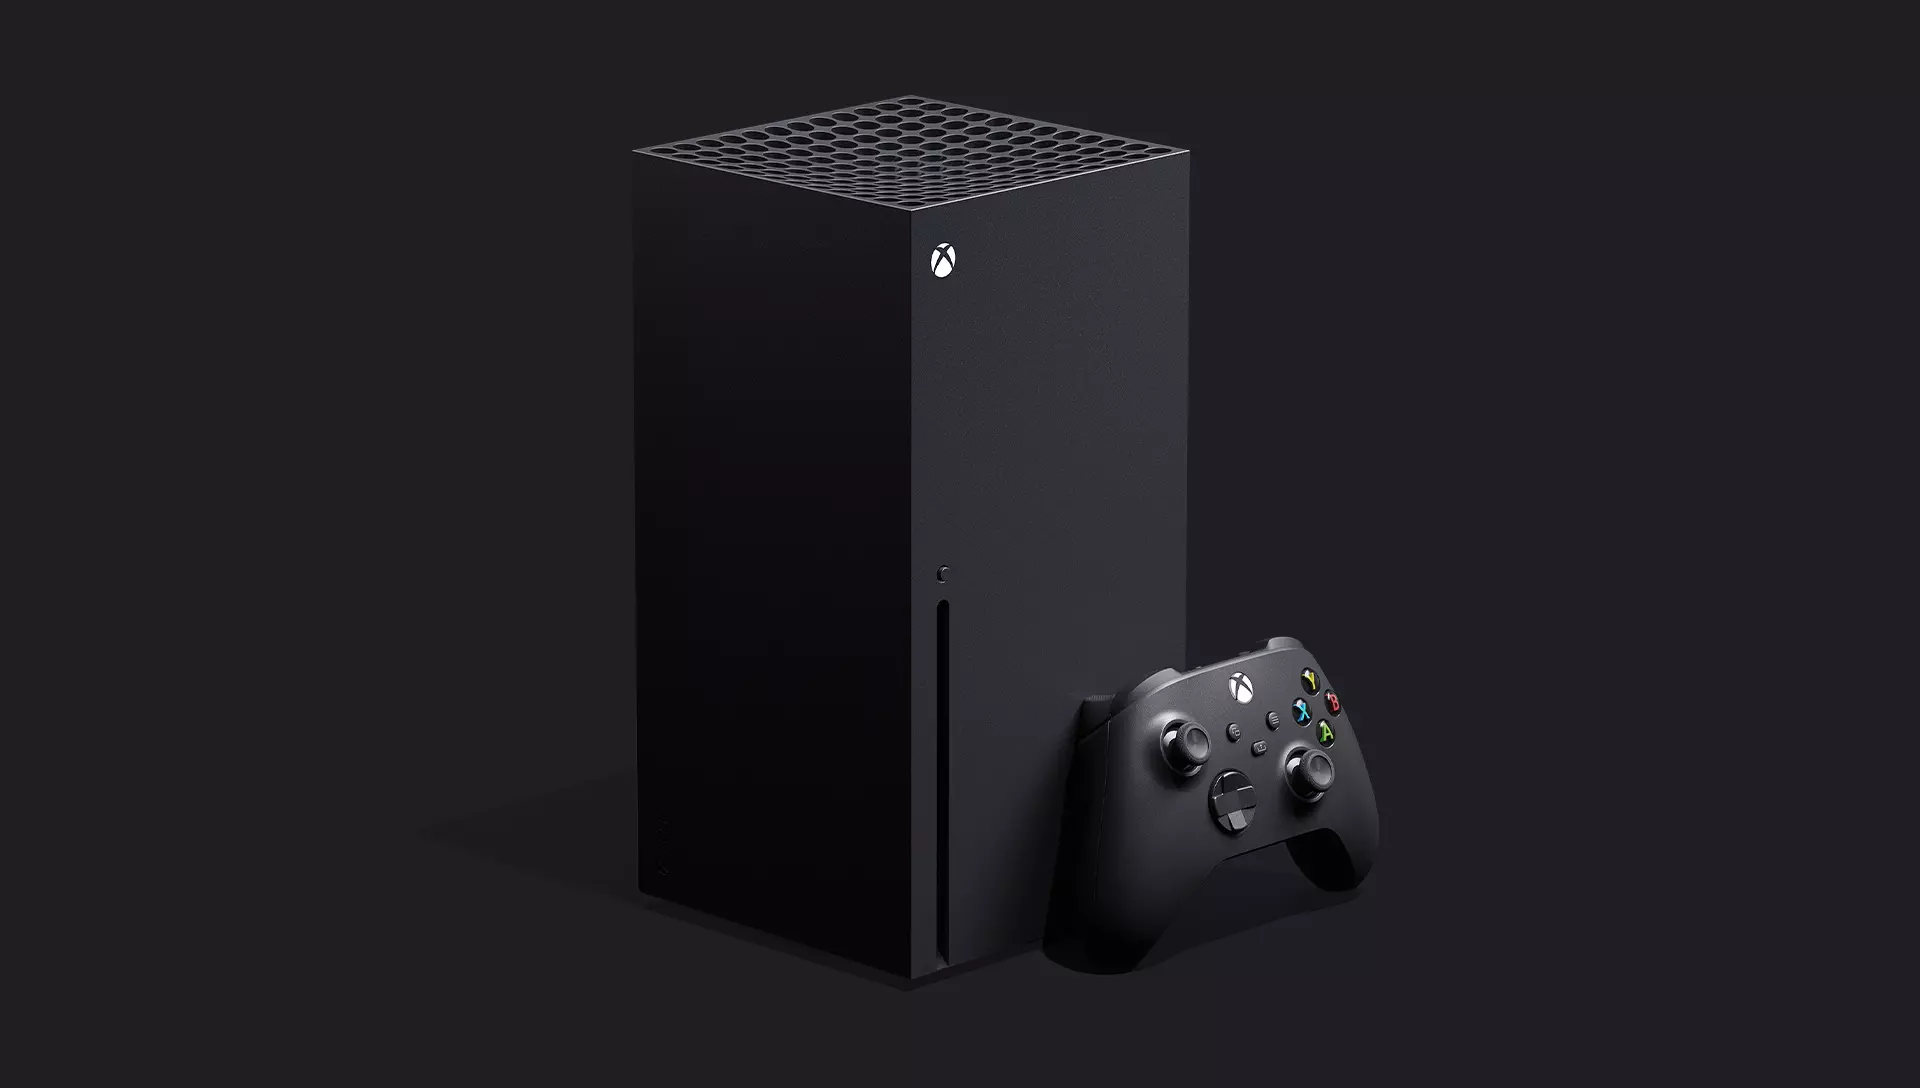 Еще в далеком 2018 на конференции E3 Фил Спенсер объявил о разработке новой консоли семейства Xbox.